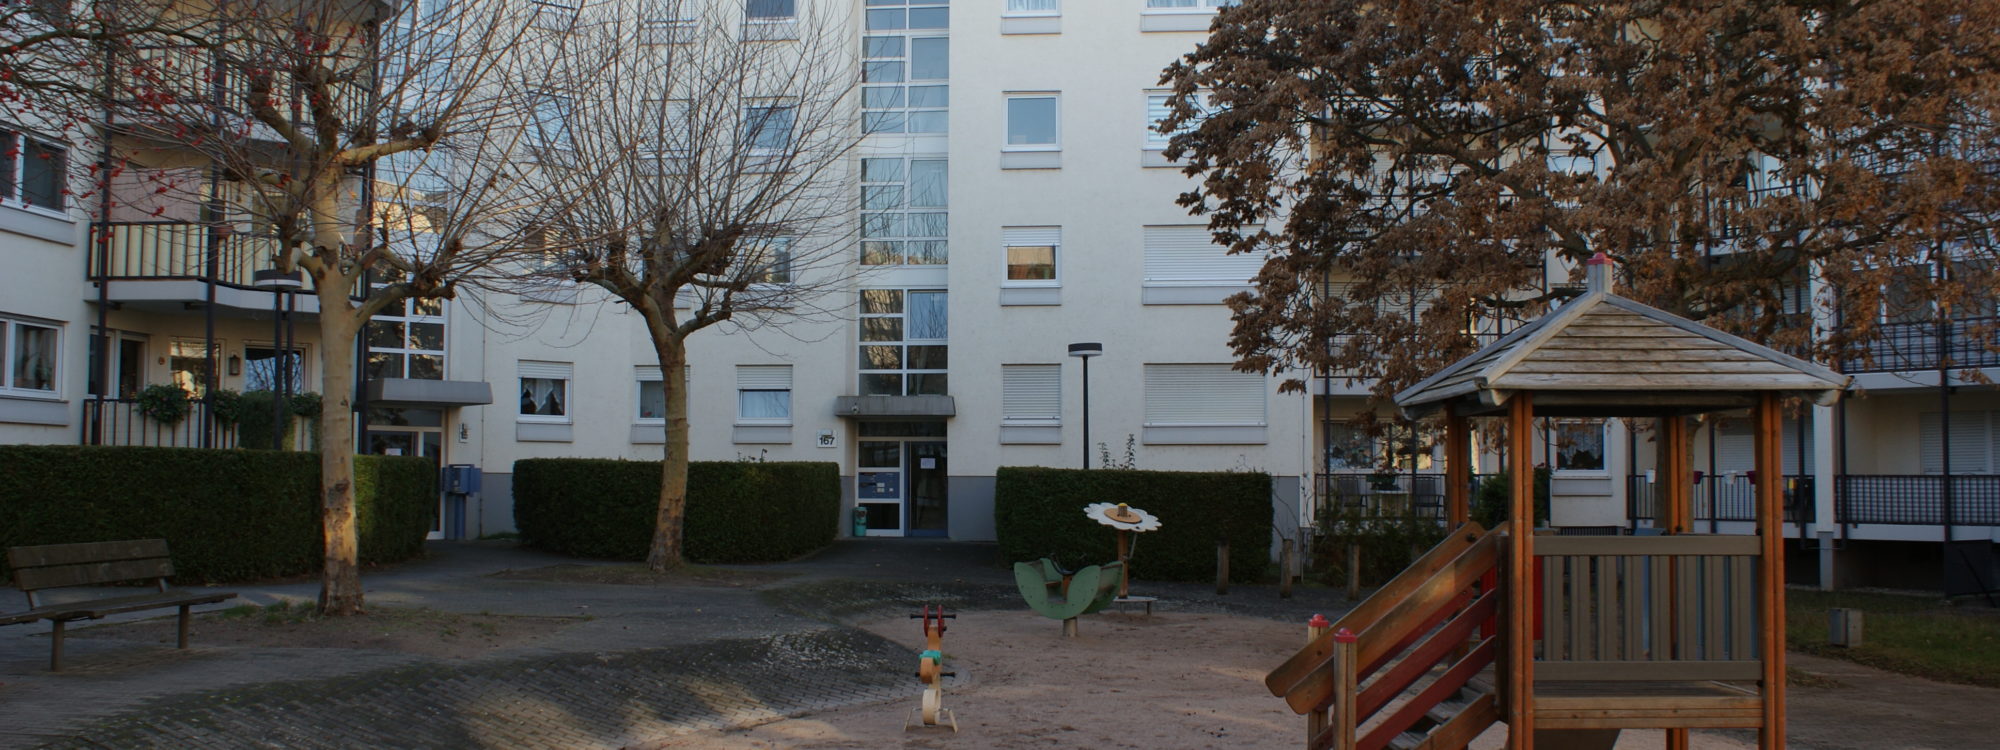 VERKAUFT! — Schicke, geräumige 3 Zimmer Wohnung, Balkon & Stellplatz